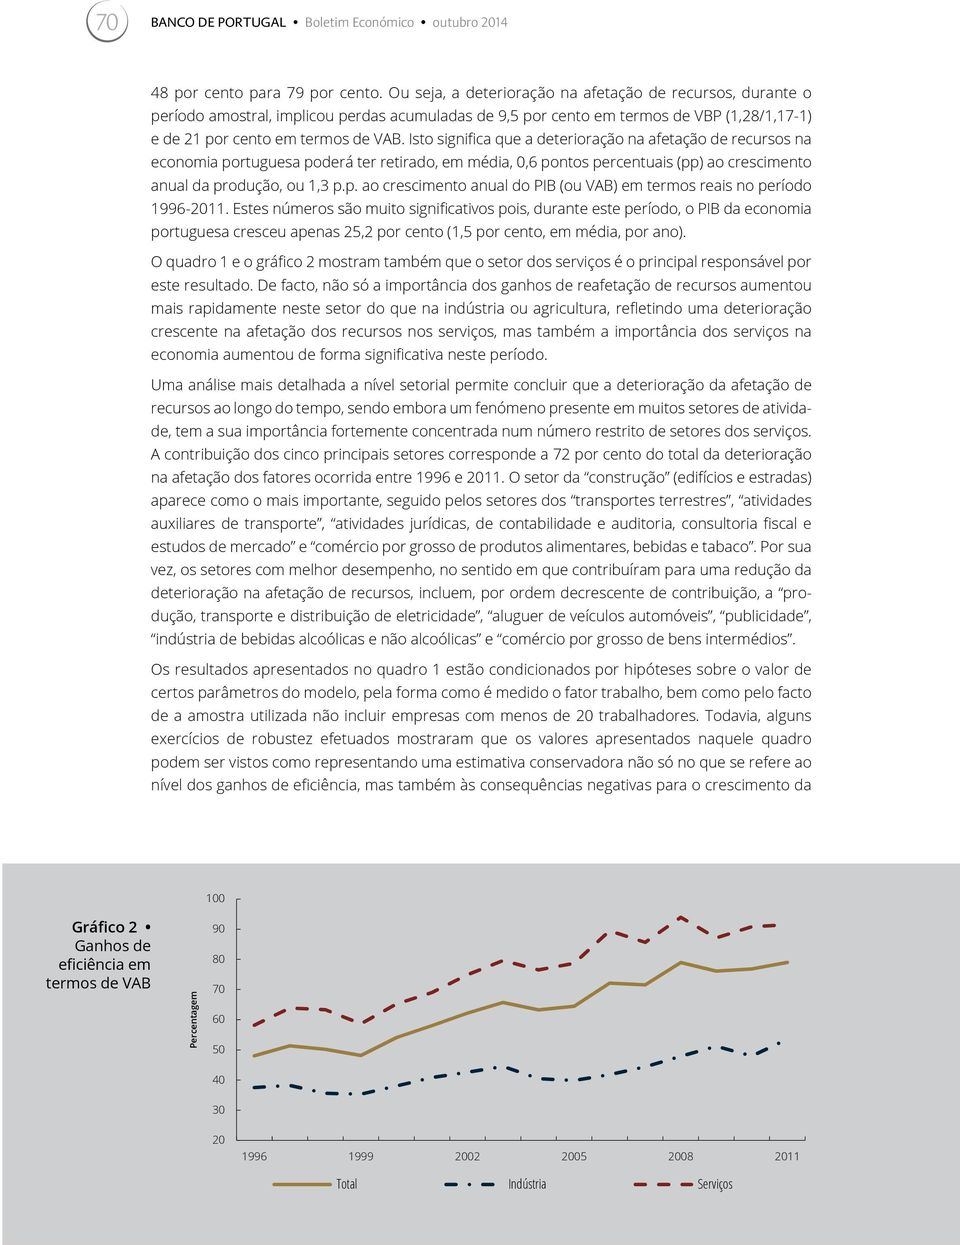 Ito ignifica que a deterioração na afetação de recuro na economia portuguea poderá ter retirado, em média, 0,6 ponto percentuai (pp) ao crecimento anual da produção, ou 1,3 p.p. ao crecimento anual do PIB (ou VAB) em termo reai no período 1996-2011.